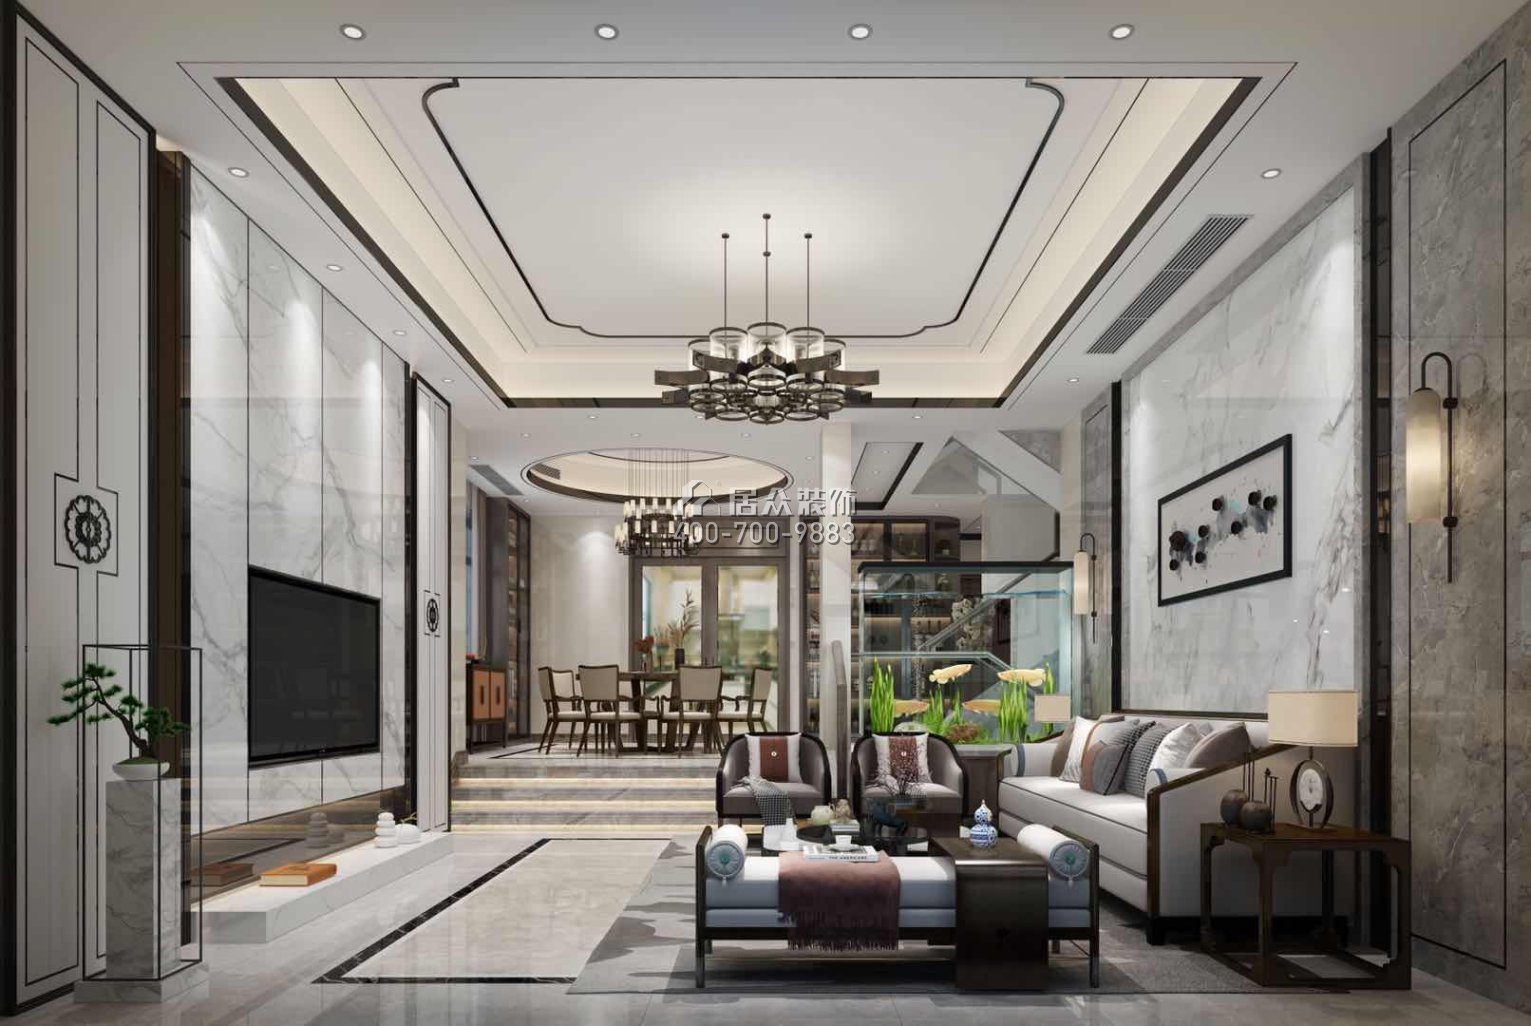 新世纪领居450平方米中式风格别墅户型客厅装修效果图